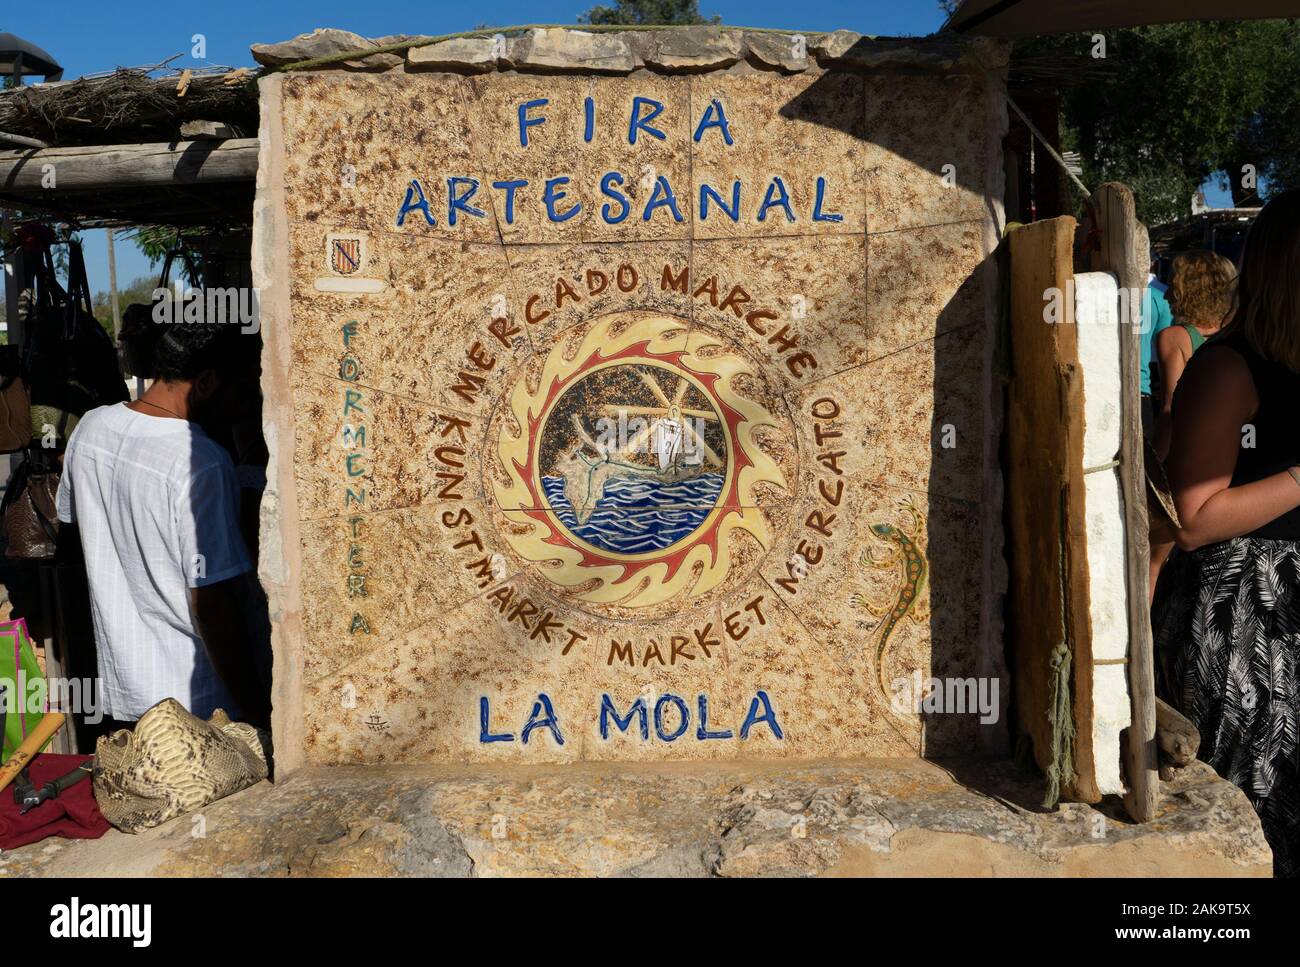 Formentera, Formentera, Espagne : le signe de la mola, un célèbre marché hippie marché avec des produits d'art et d'artisanat Banque D'Images